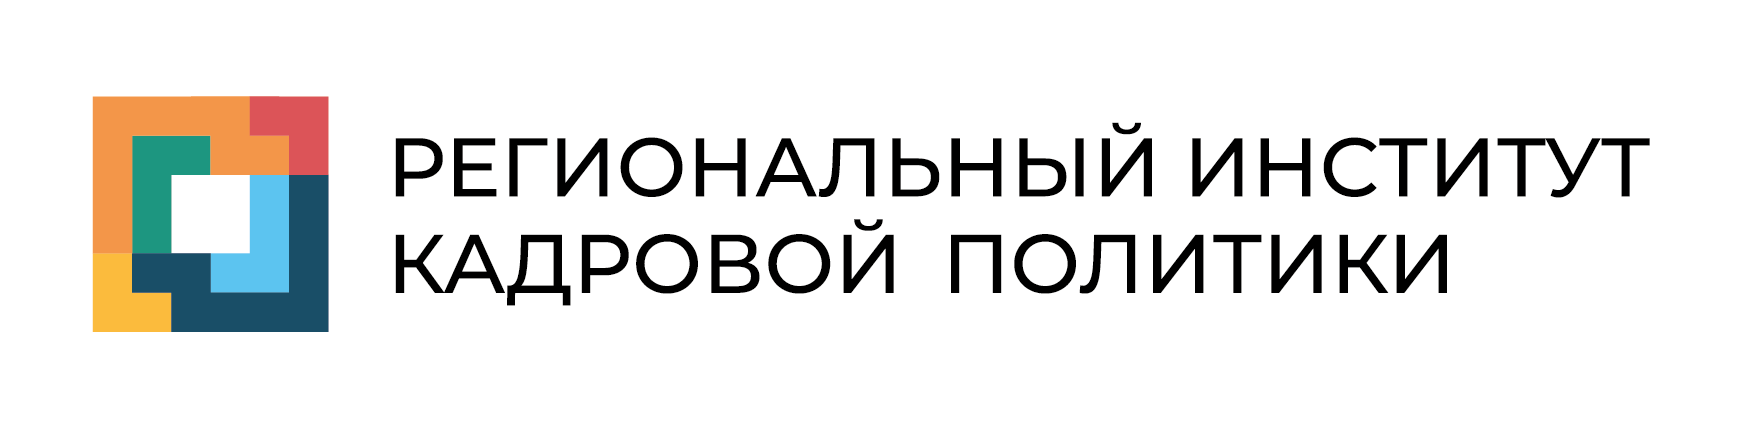 Логотип РИКПНПО